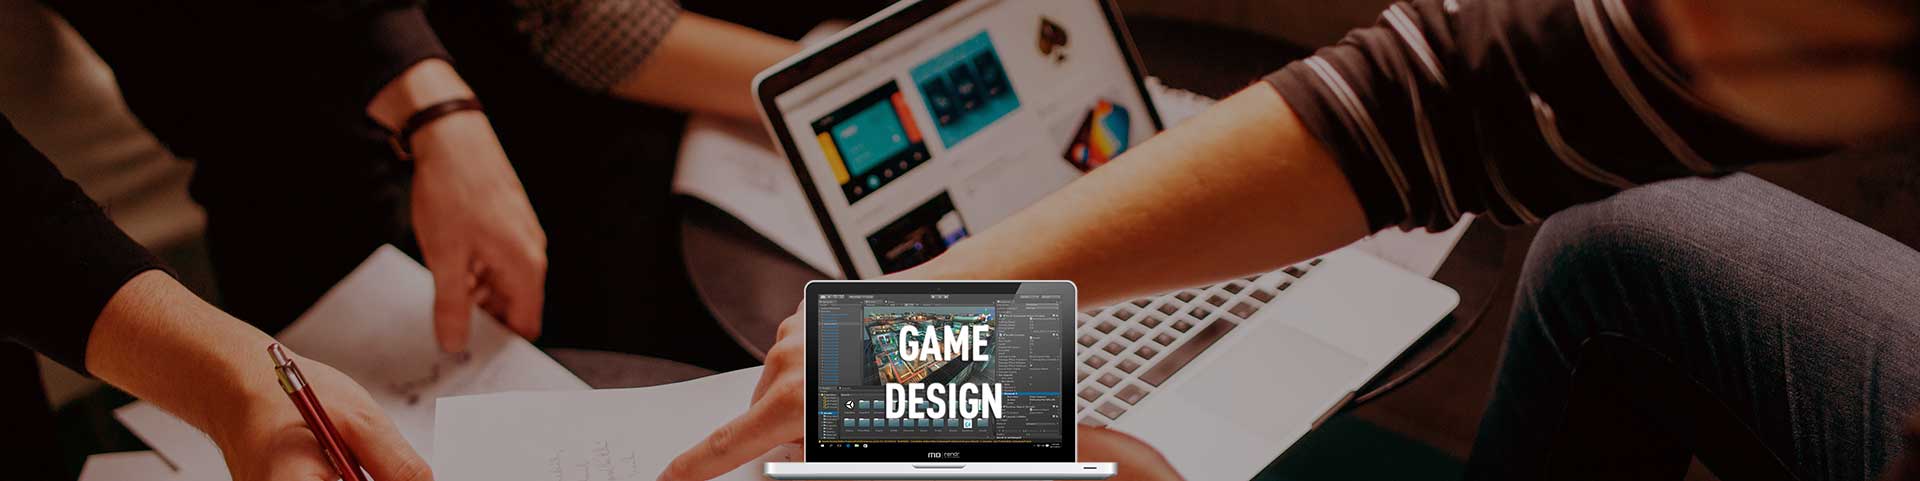 Curso Game Design y Programación Videojuegos